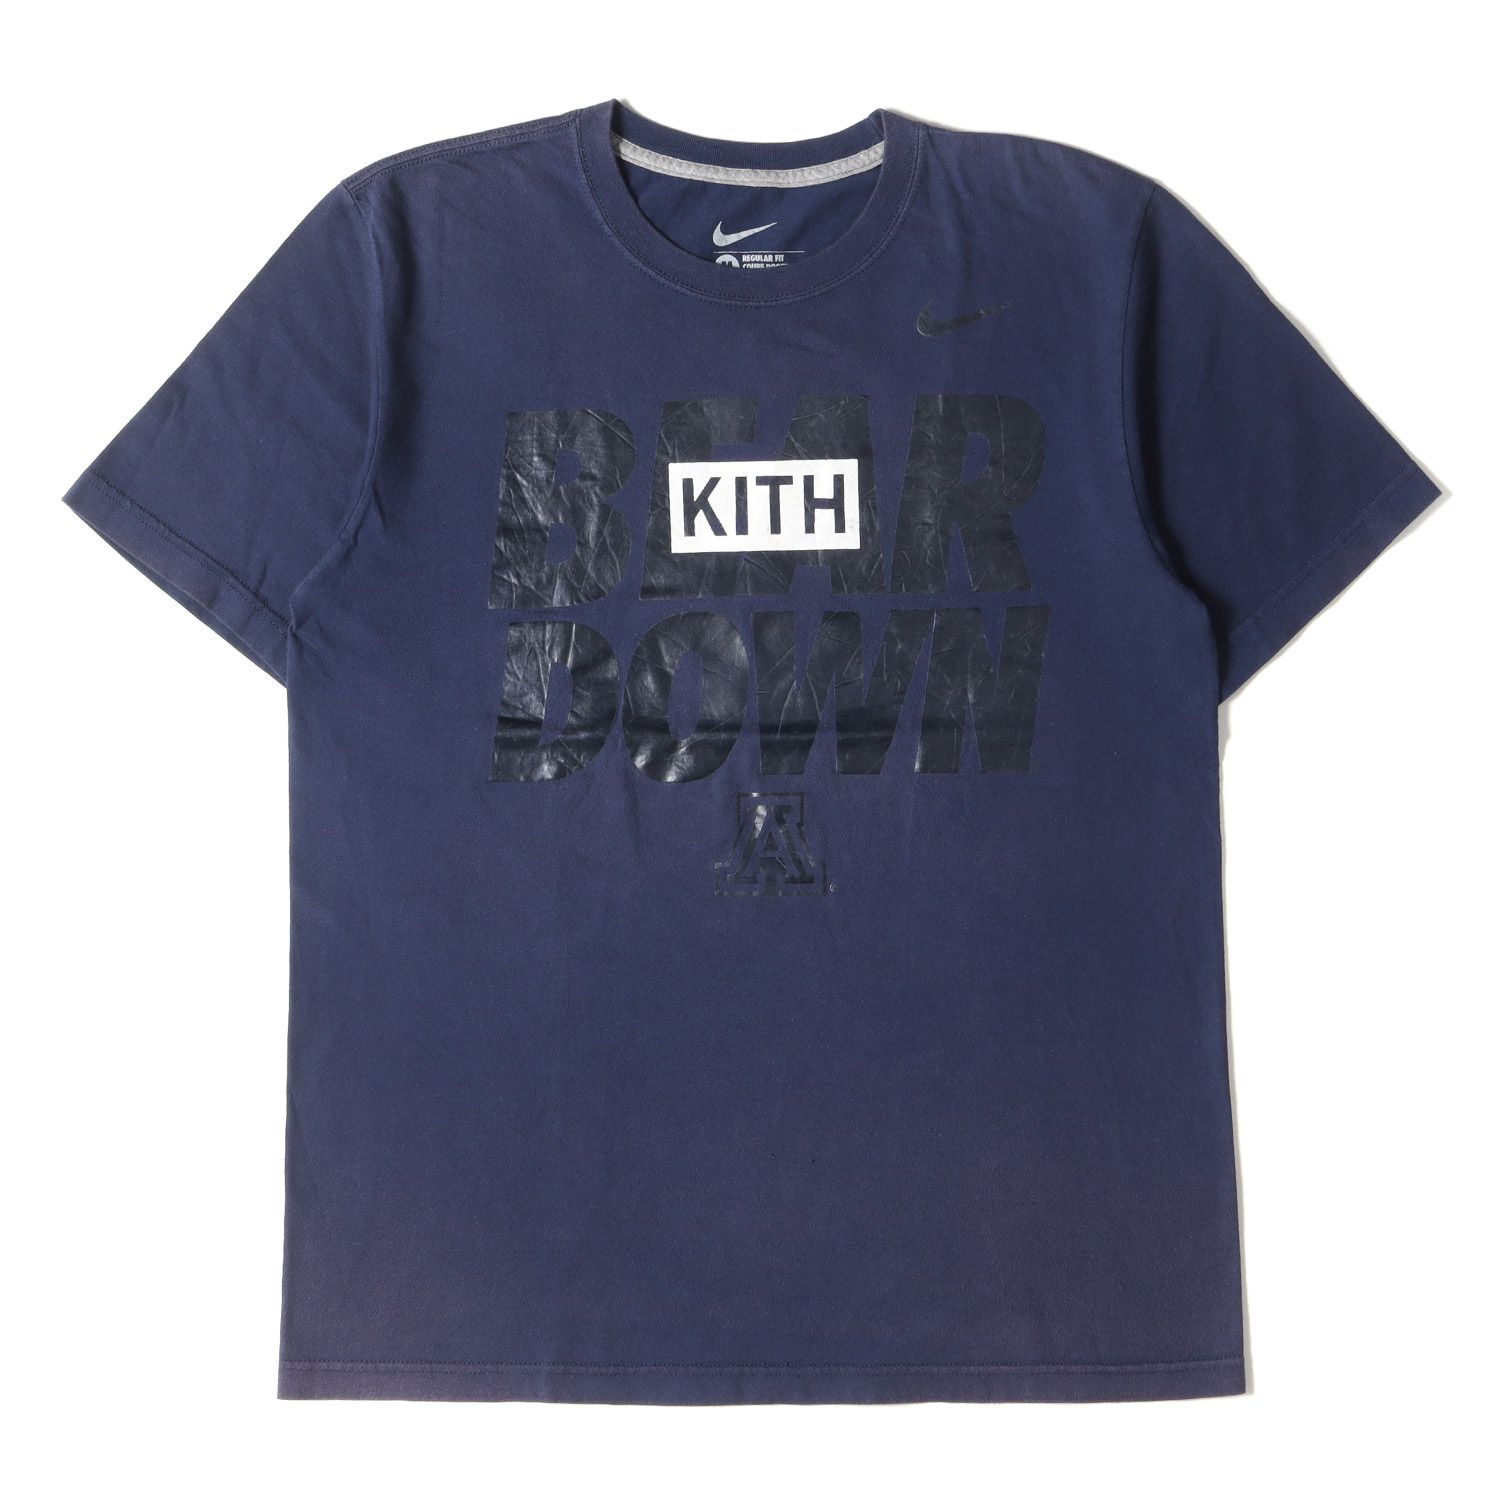 商品名Kith Treats Tokyo Treats Sakura Tシャツ S